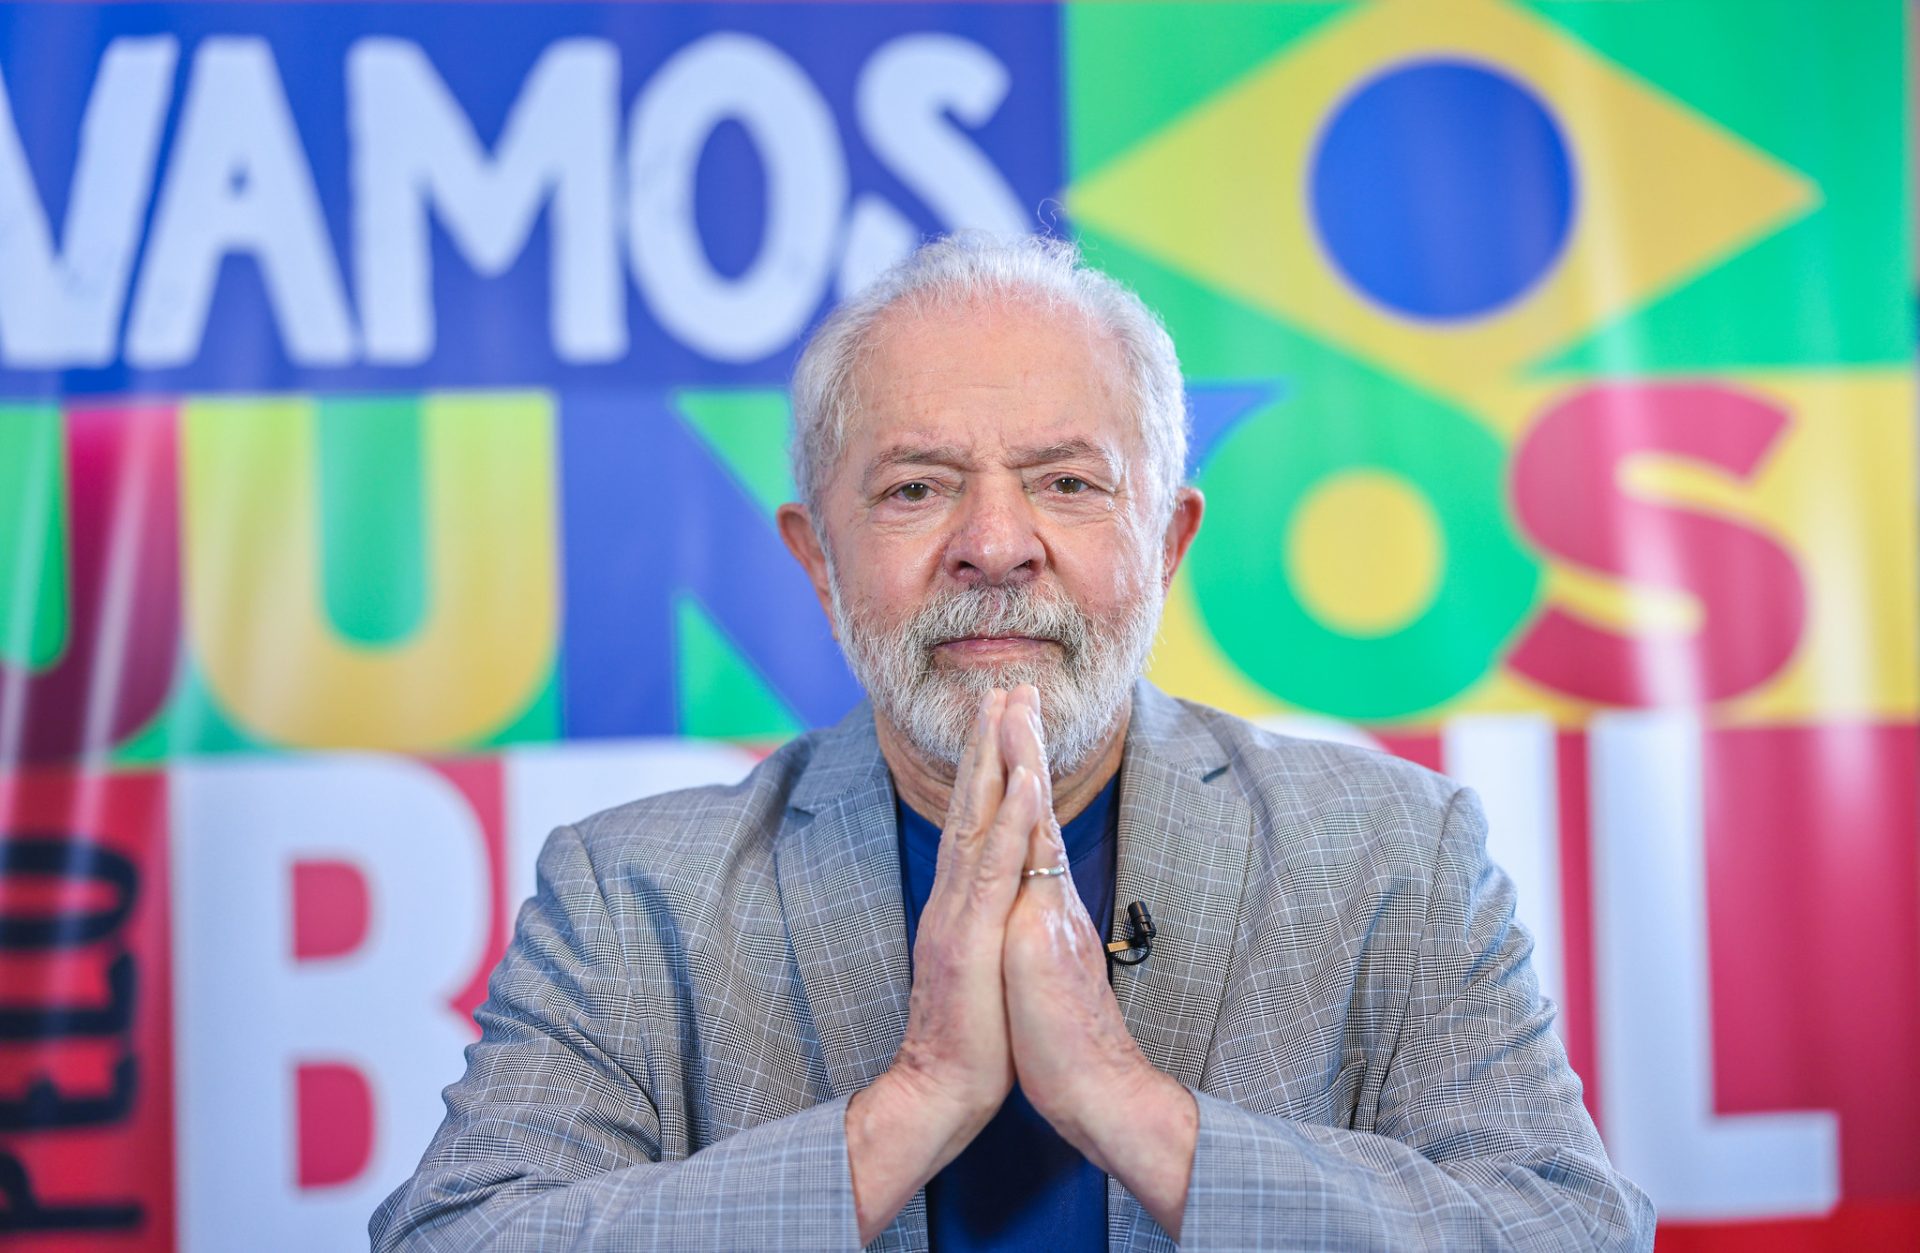 Eleições 2022: Lula corre para vencer no 1º turno eleição presidencial, é o que aponta pesquisa IPEC divulgada nesta segunda(15)